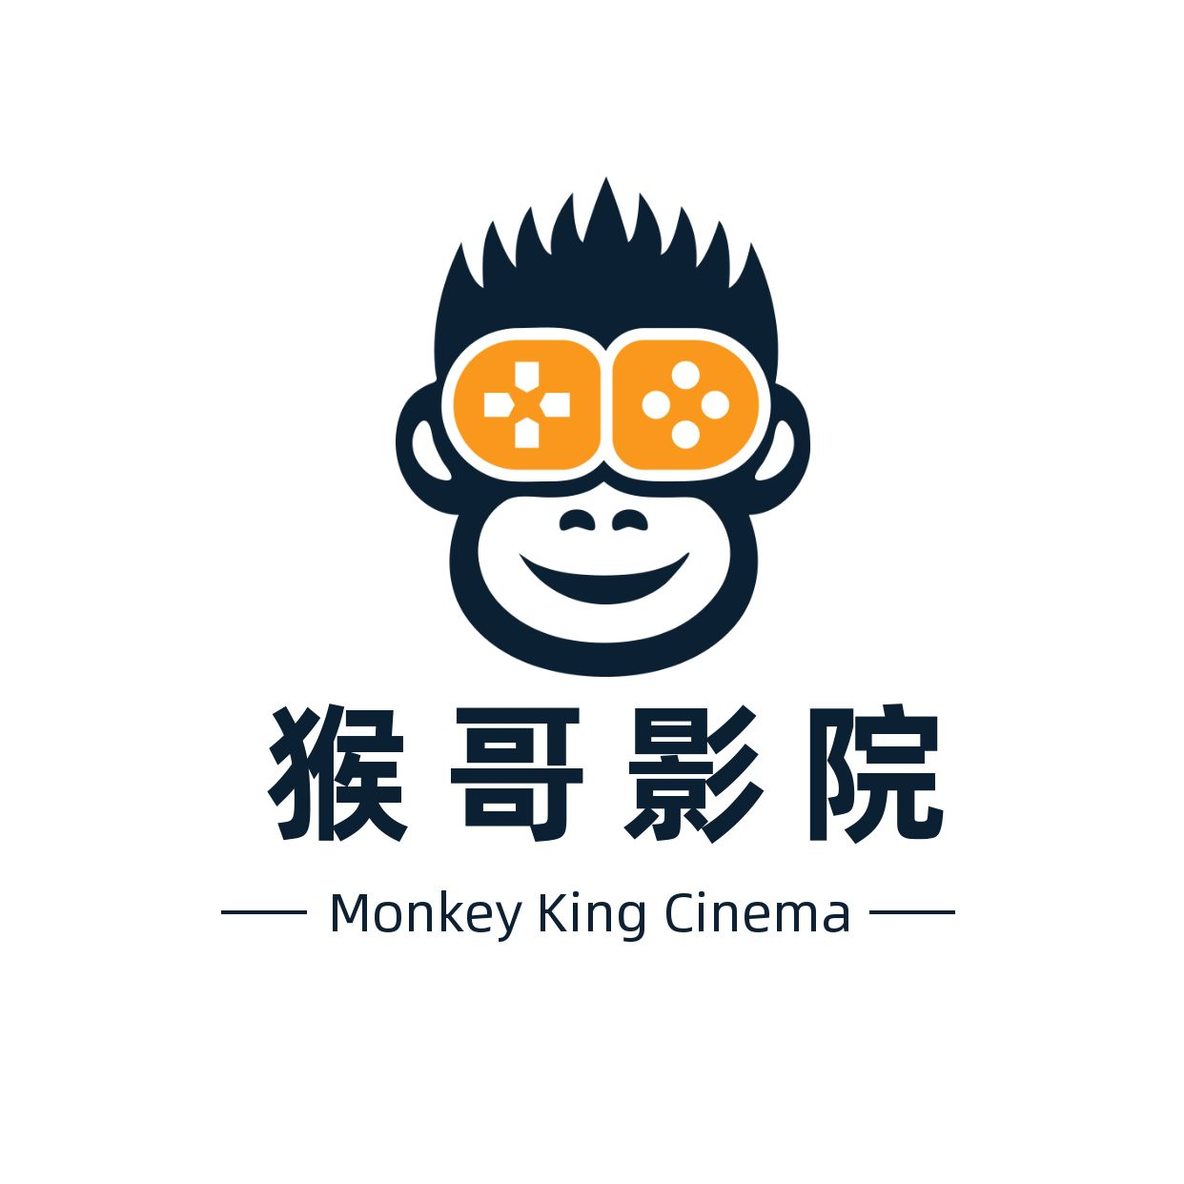 猴哥电影院 网络视频播放器logo